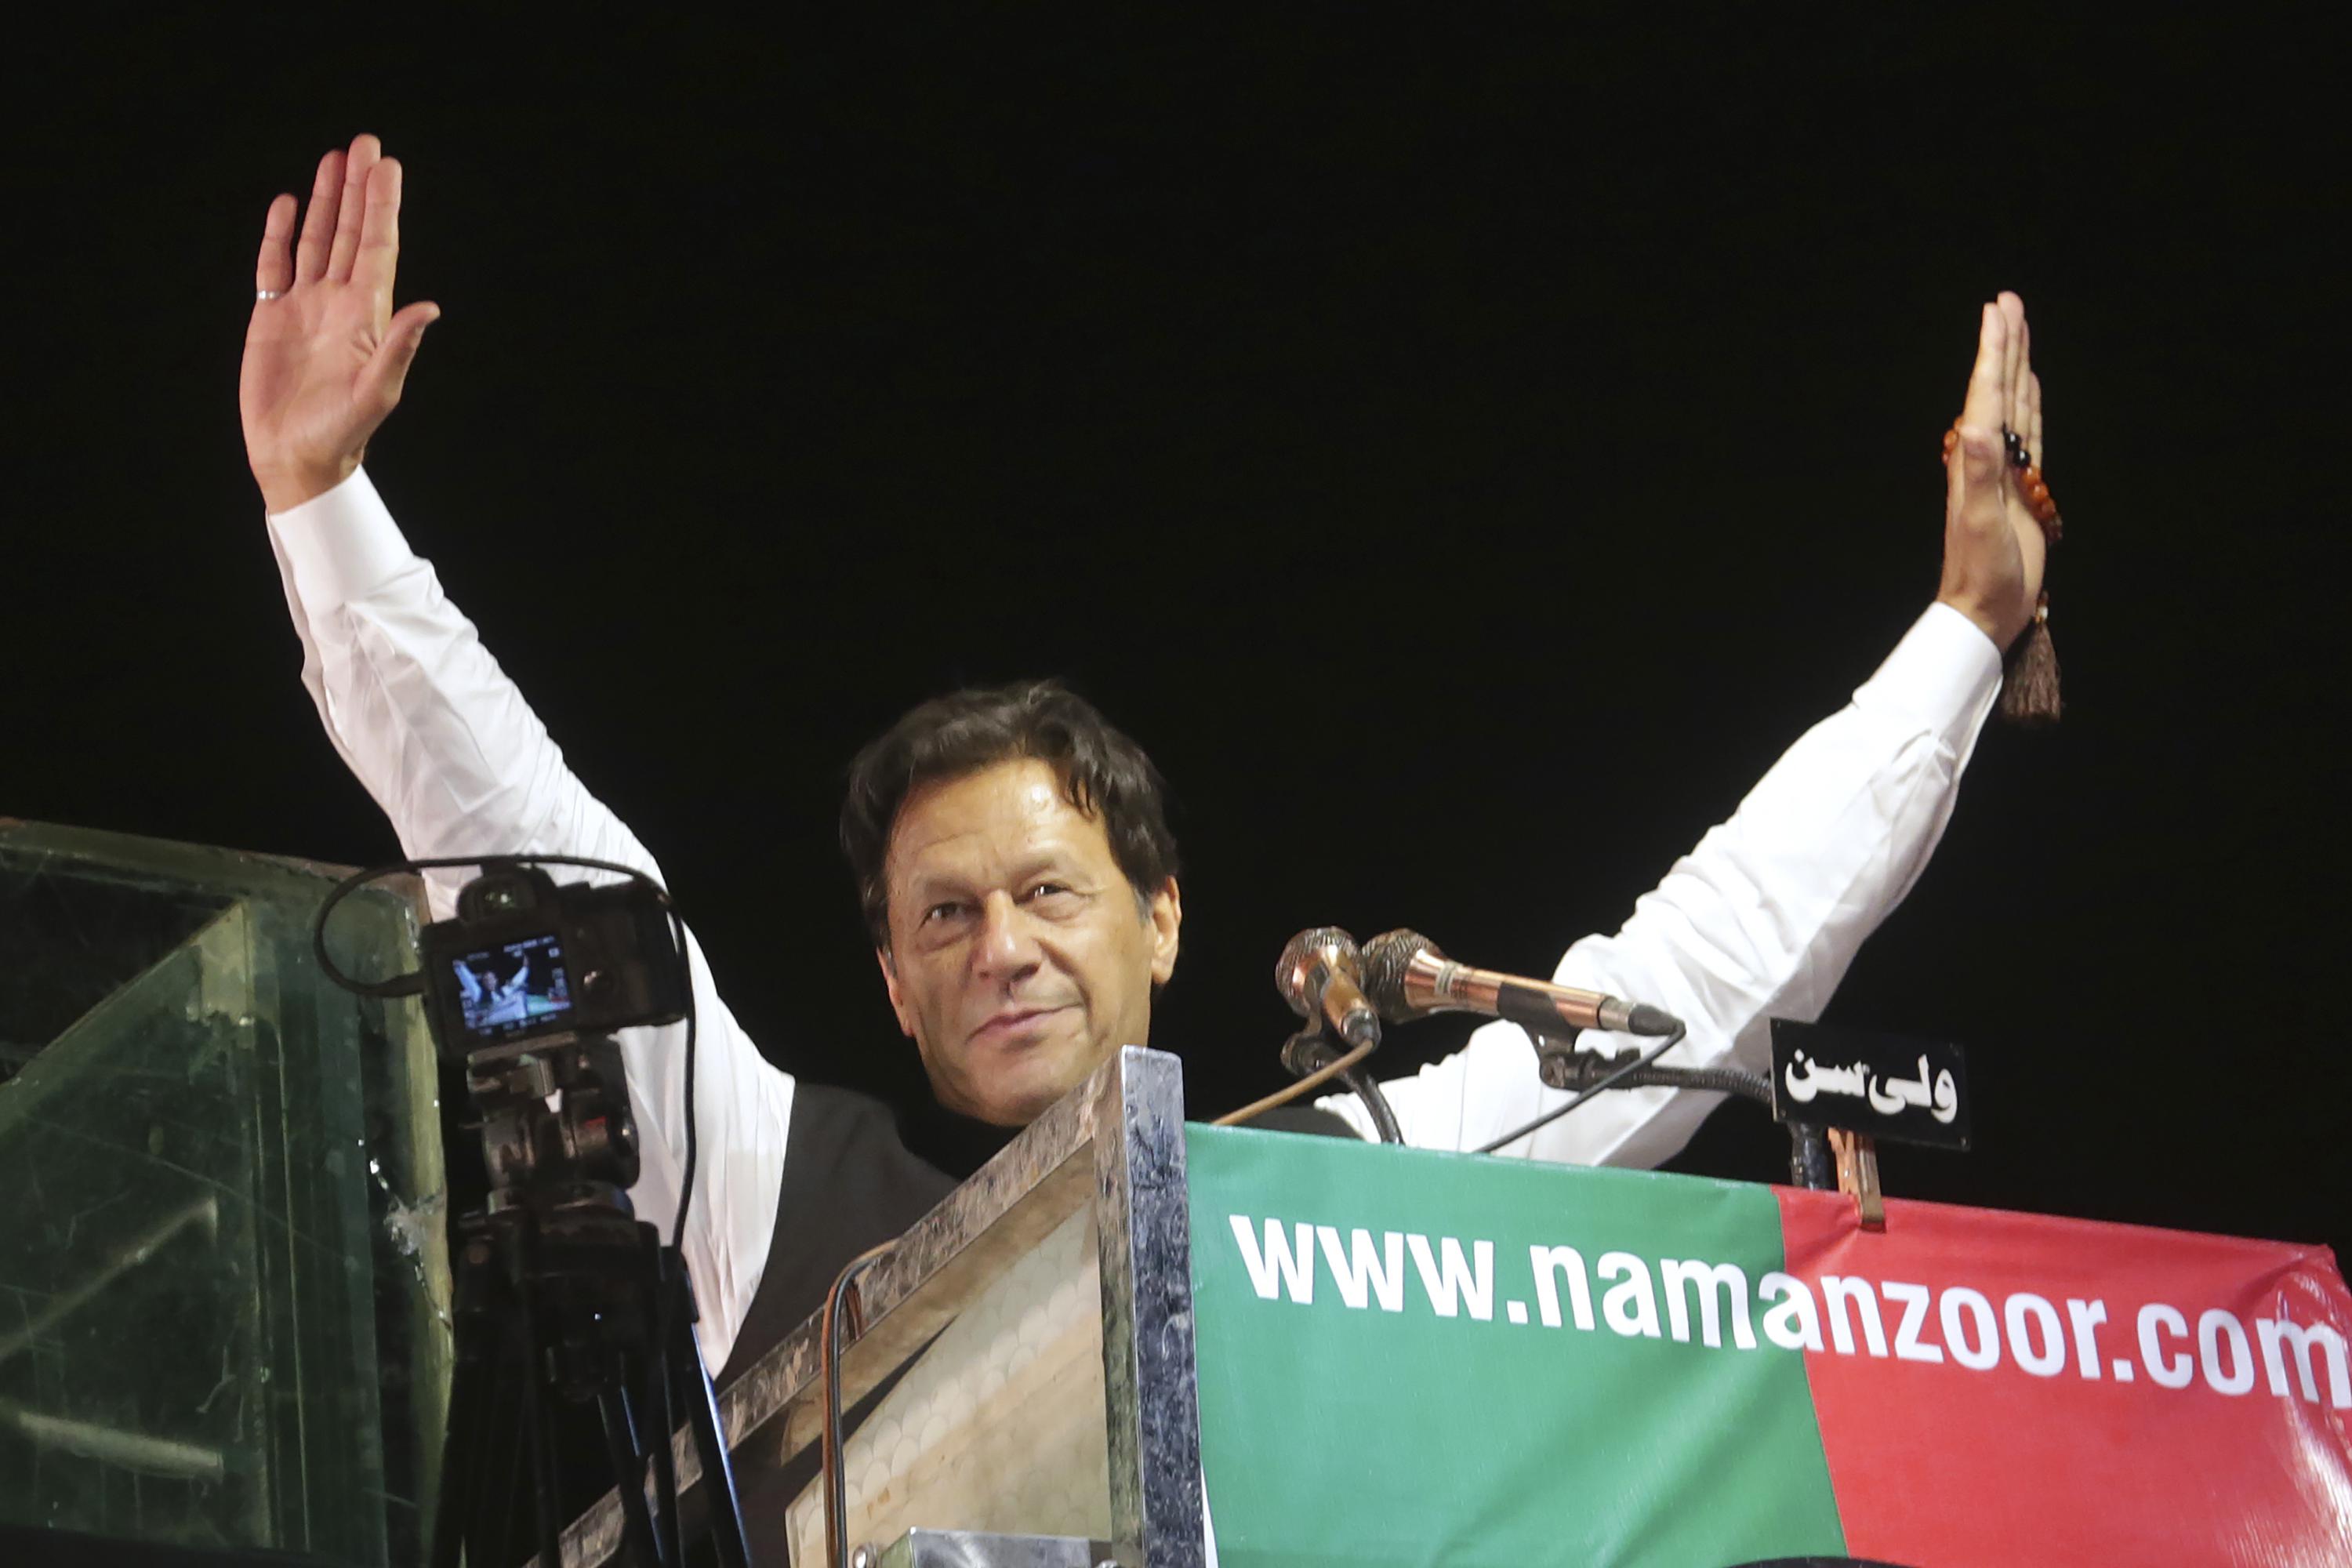 La policía presenta cargos de terrorismo contra el paquistaní Imran Khan